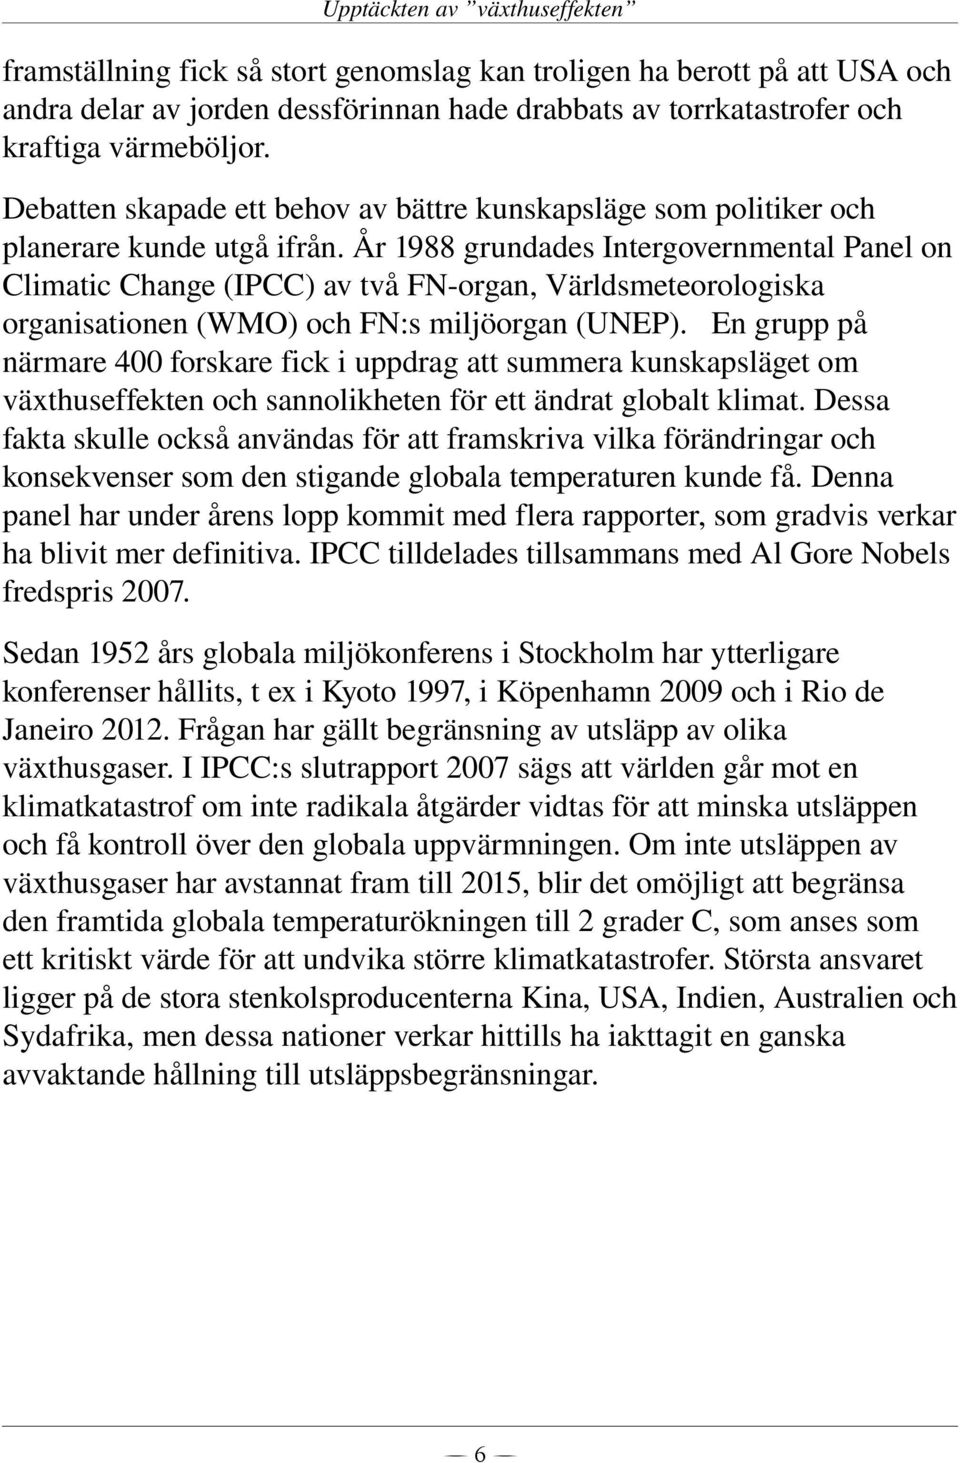 År 1988 grundades Intergovernmental Panel on Climatic Change (IPCC) av två FN organ, Världsmeteorologiska organisationen (WMO) och FN:s miljöorgan (UNEP).